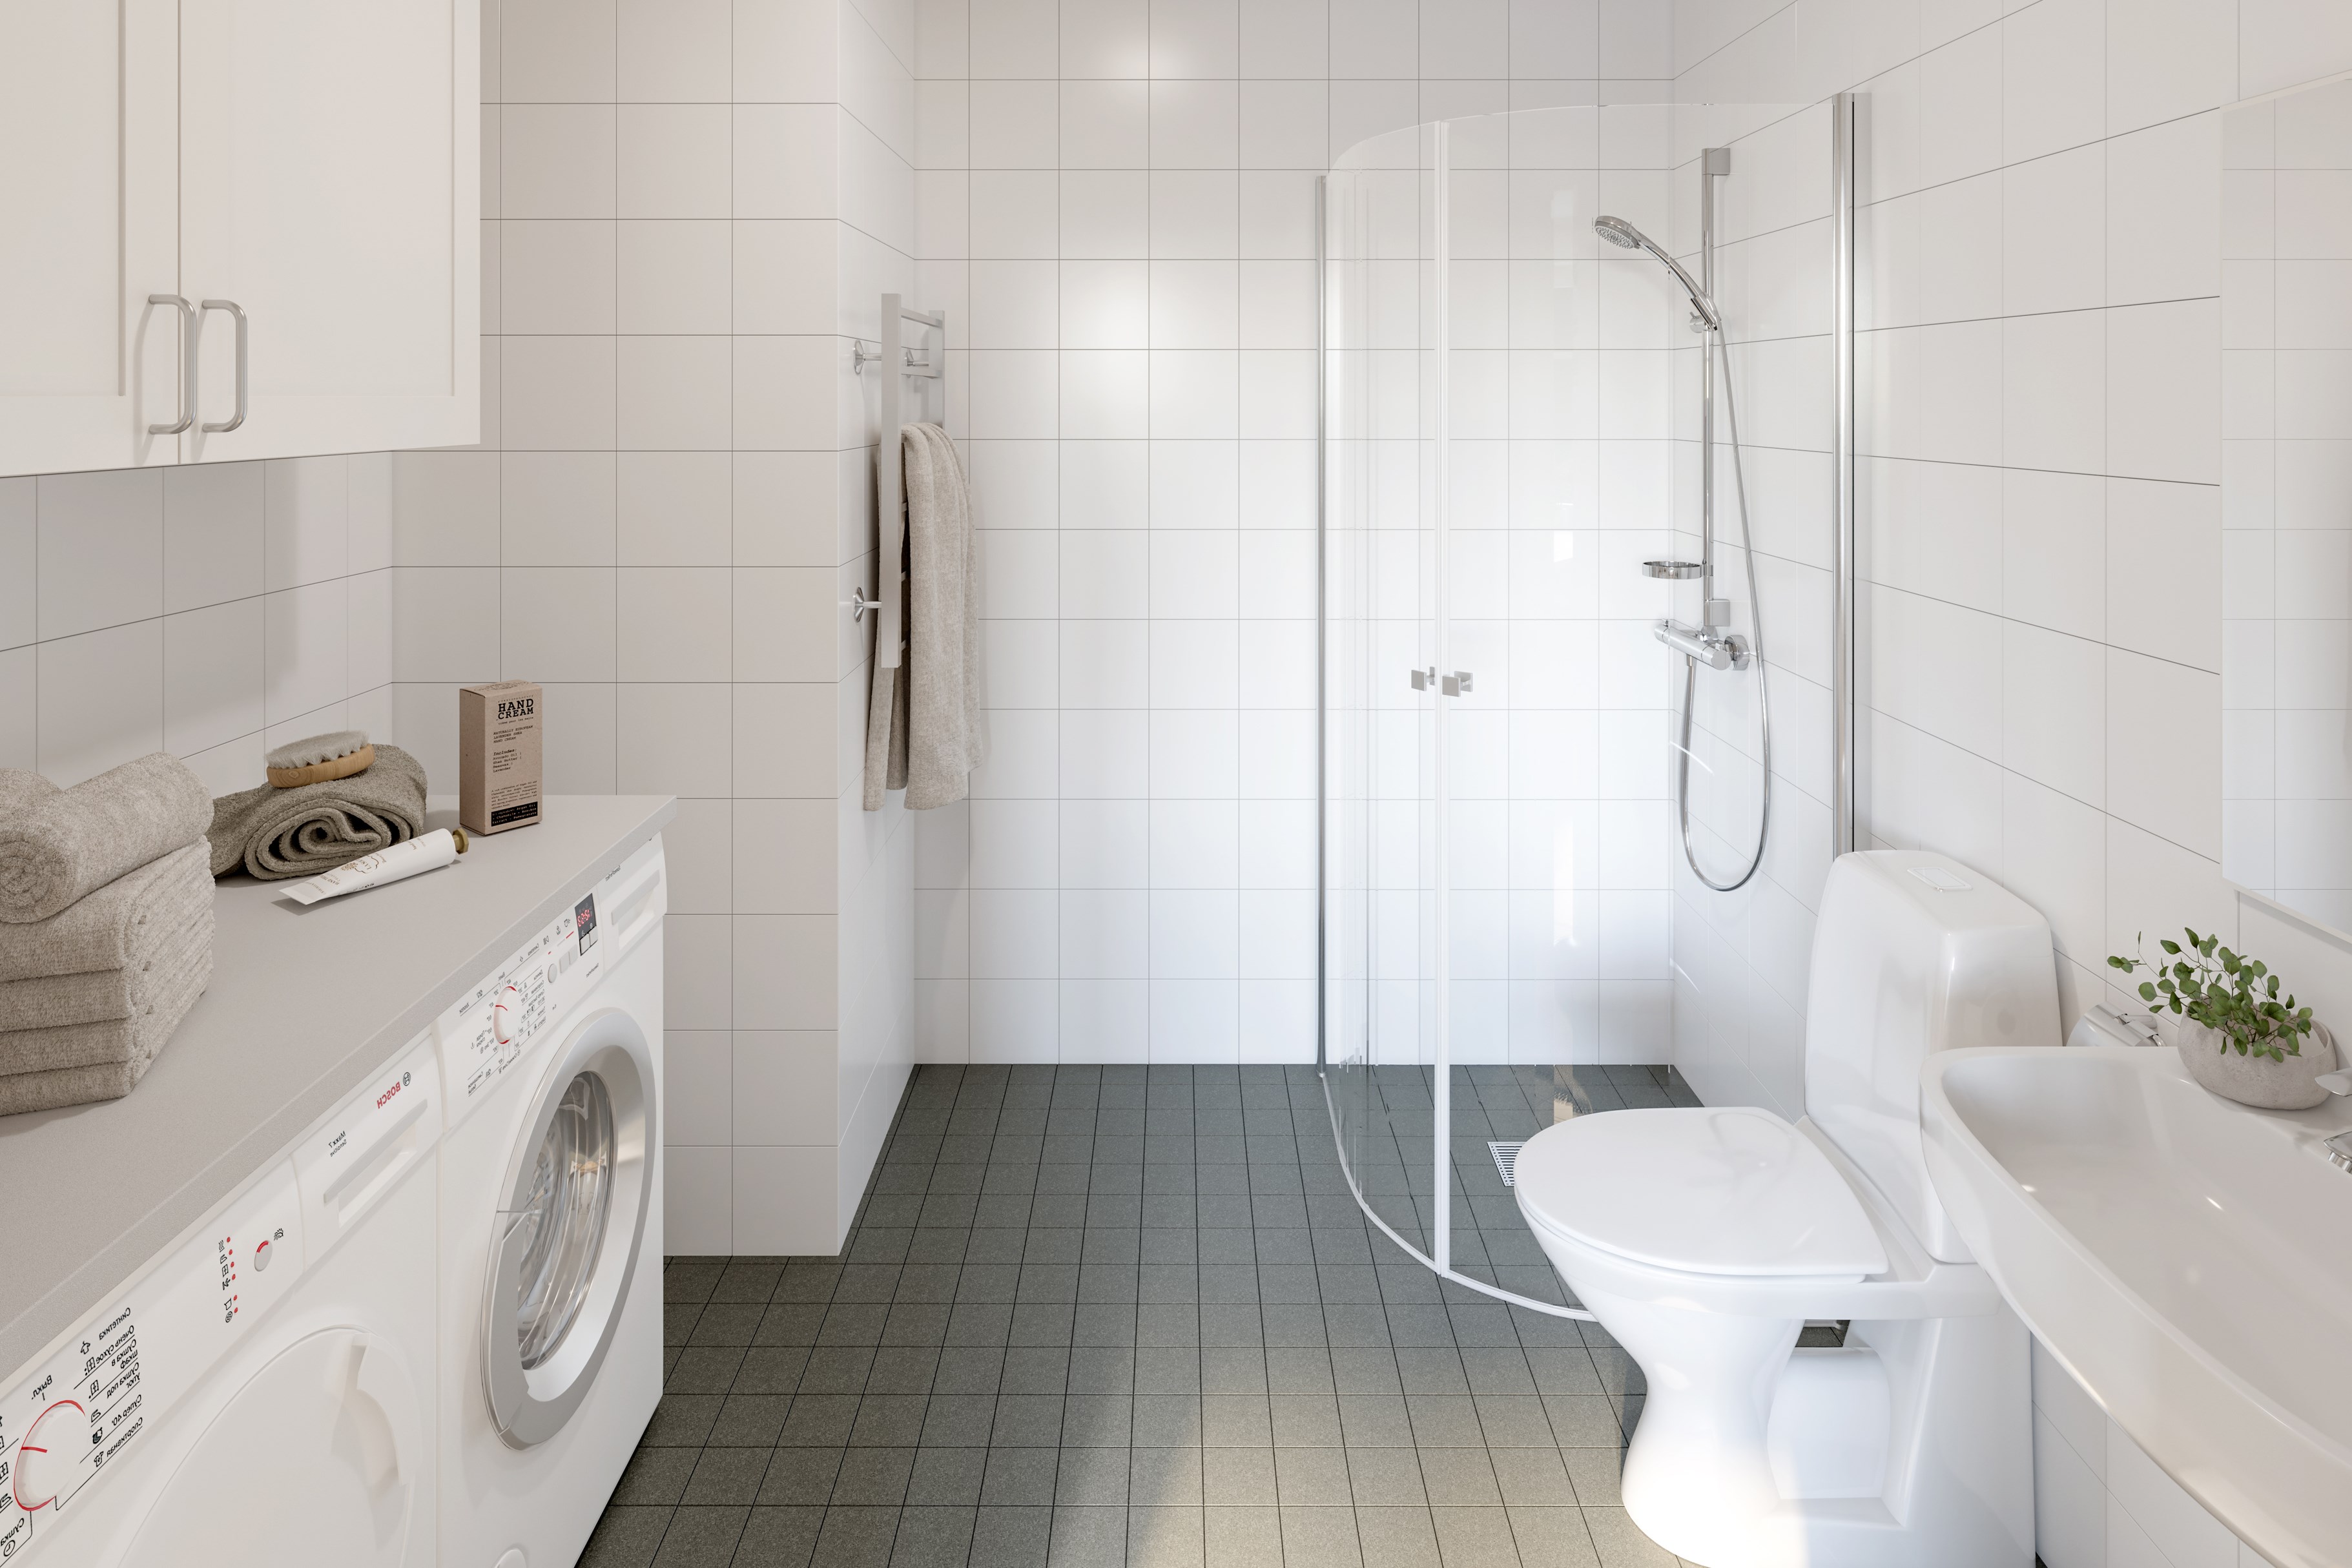 Badrum med grå klinker på golv, vitt kakel på väggar, duschväggar i glas, vit toalettstol och handfat, vita överskåp och bänkskiva med tvättmaskin och torktumlare under.